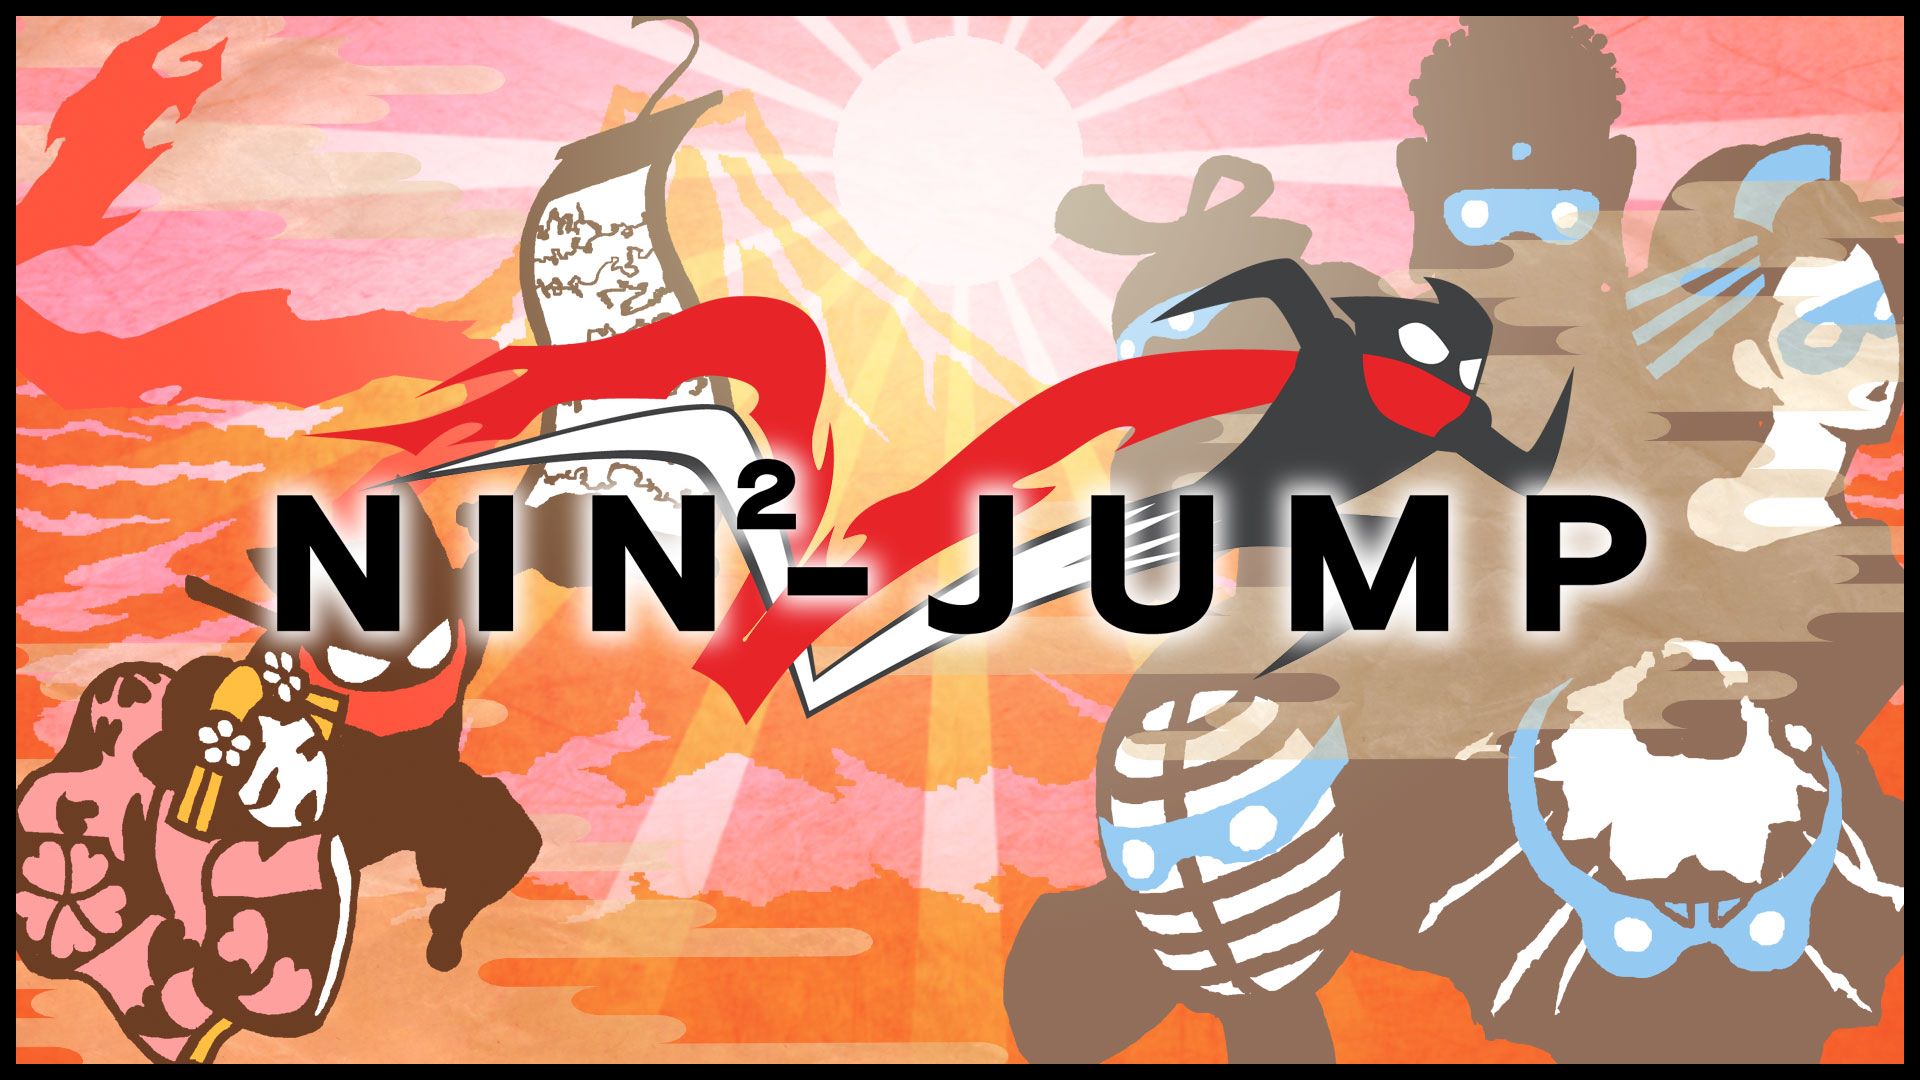 NIN²-JUMP